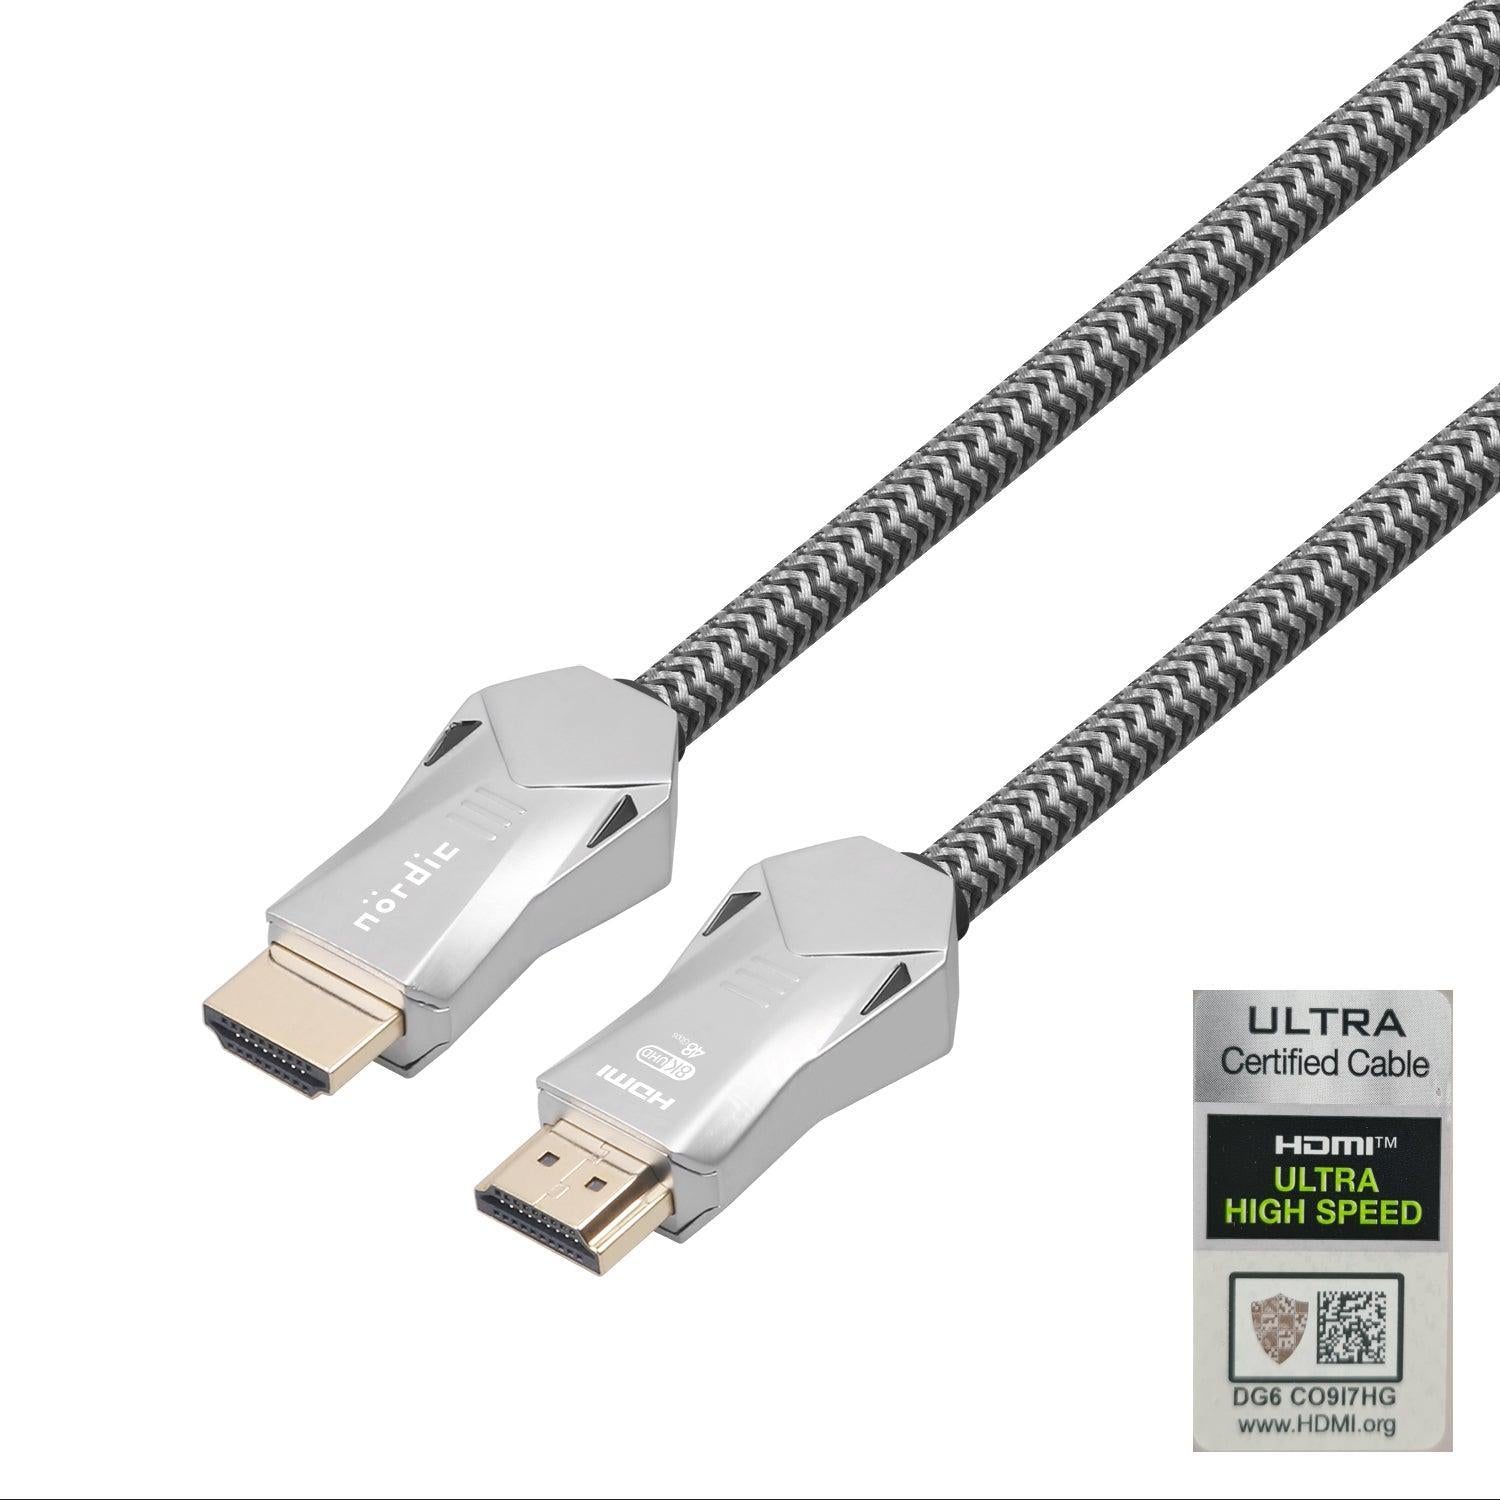 NORDIC-SERTIFISERT KABLER 3m Ultra High Speed HDMI 2.1 8K 60Hz 4K 120Hz 48Gbps Dynamic HDR eARC VRR Nylonflettet kabel gullbelagt